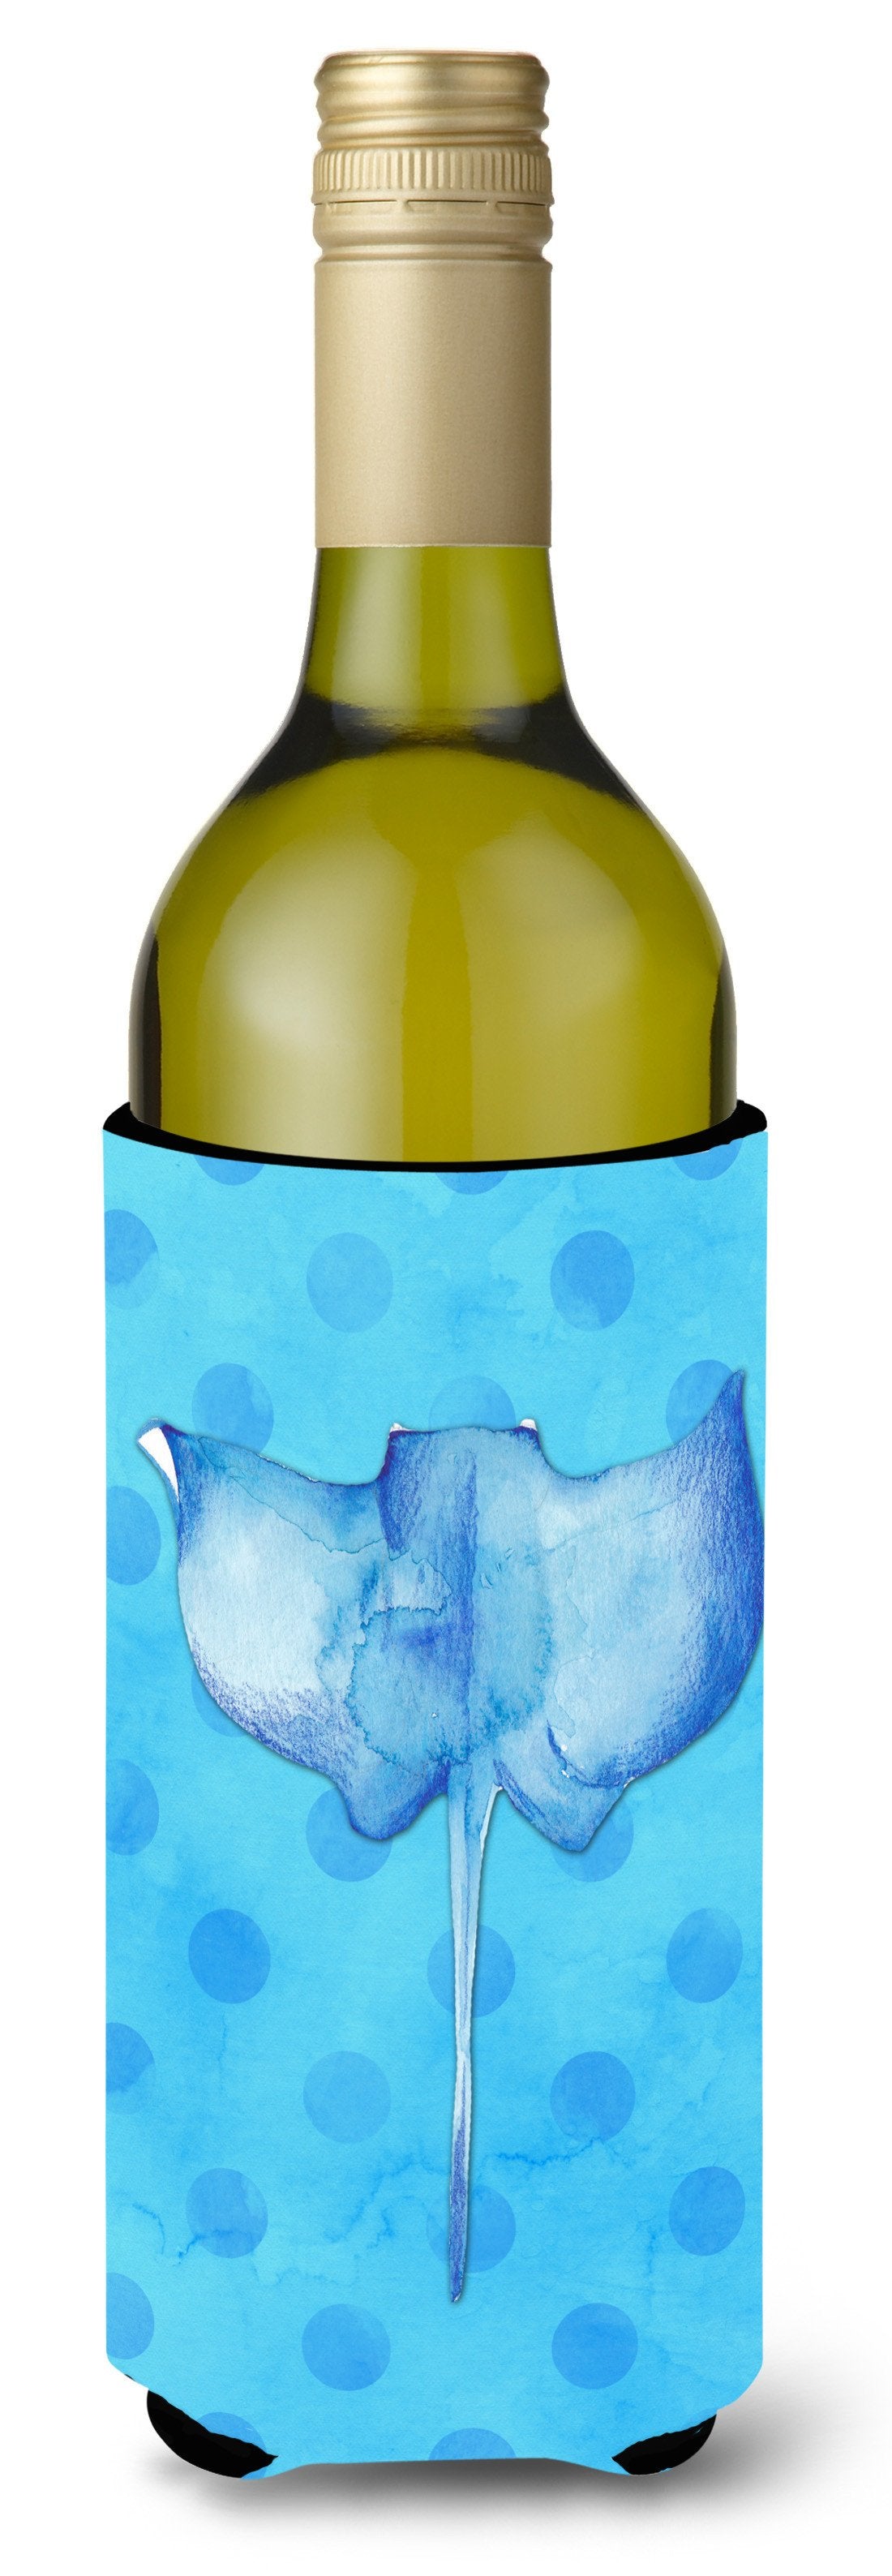 Sting Ray Blue Polkadot Wine Bottle Beverge Insulator Hugger BB8236LITERK by Caroline's Treasures